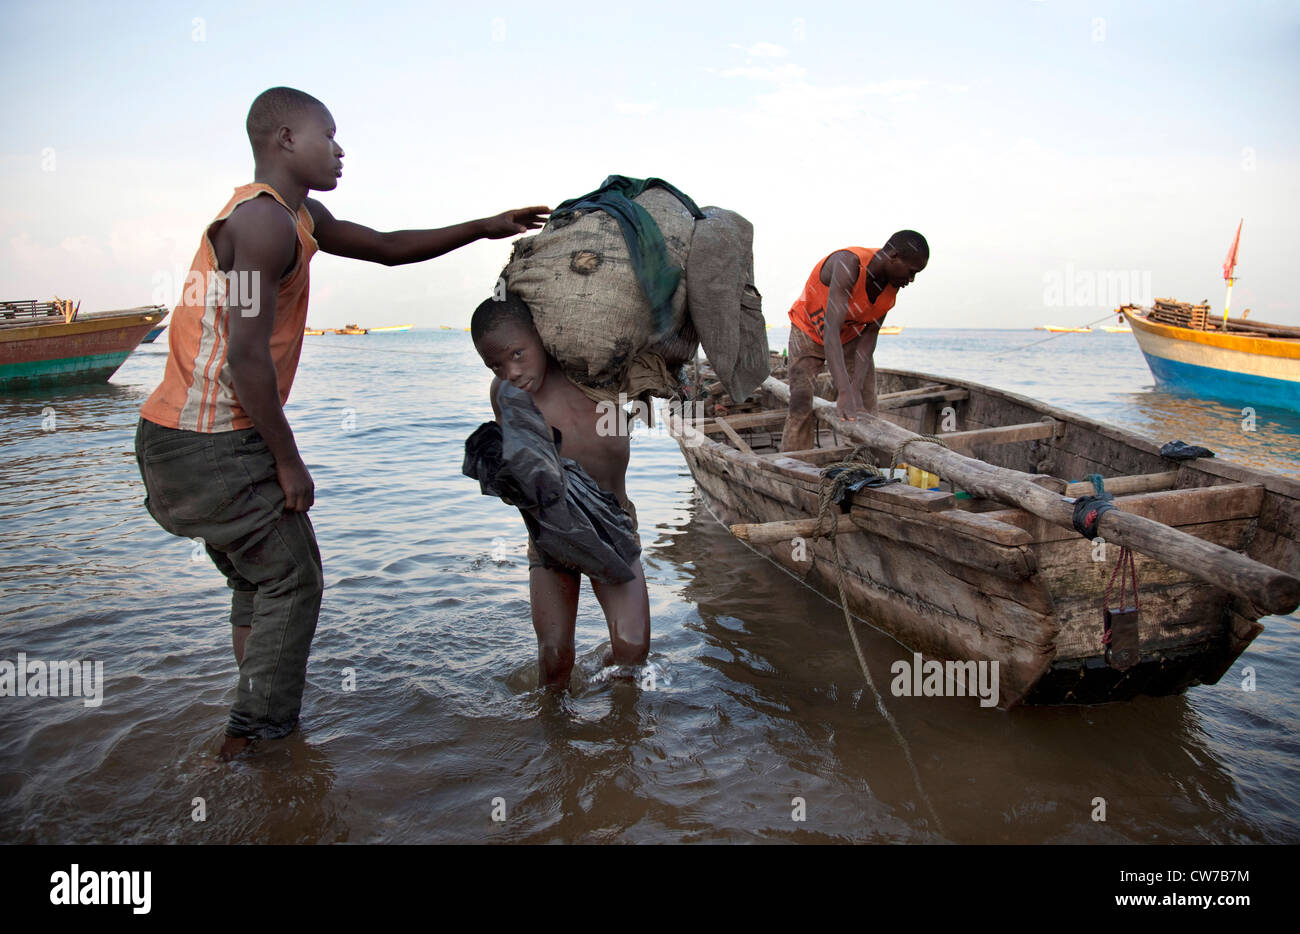 jungen tragen meschotschek voller Fischernetze an das Ufer am Morgen nach einer durchzechten Nacht Angeln, Burundi, Nyanza Lac, Mvugo, Nyanza Lac Stockfoto